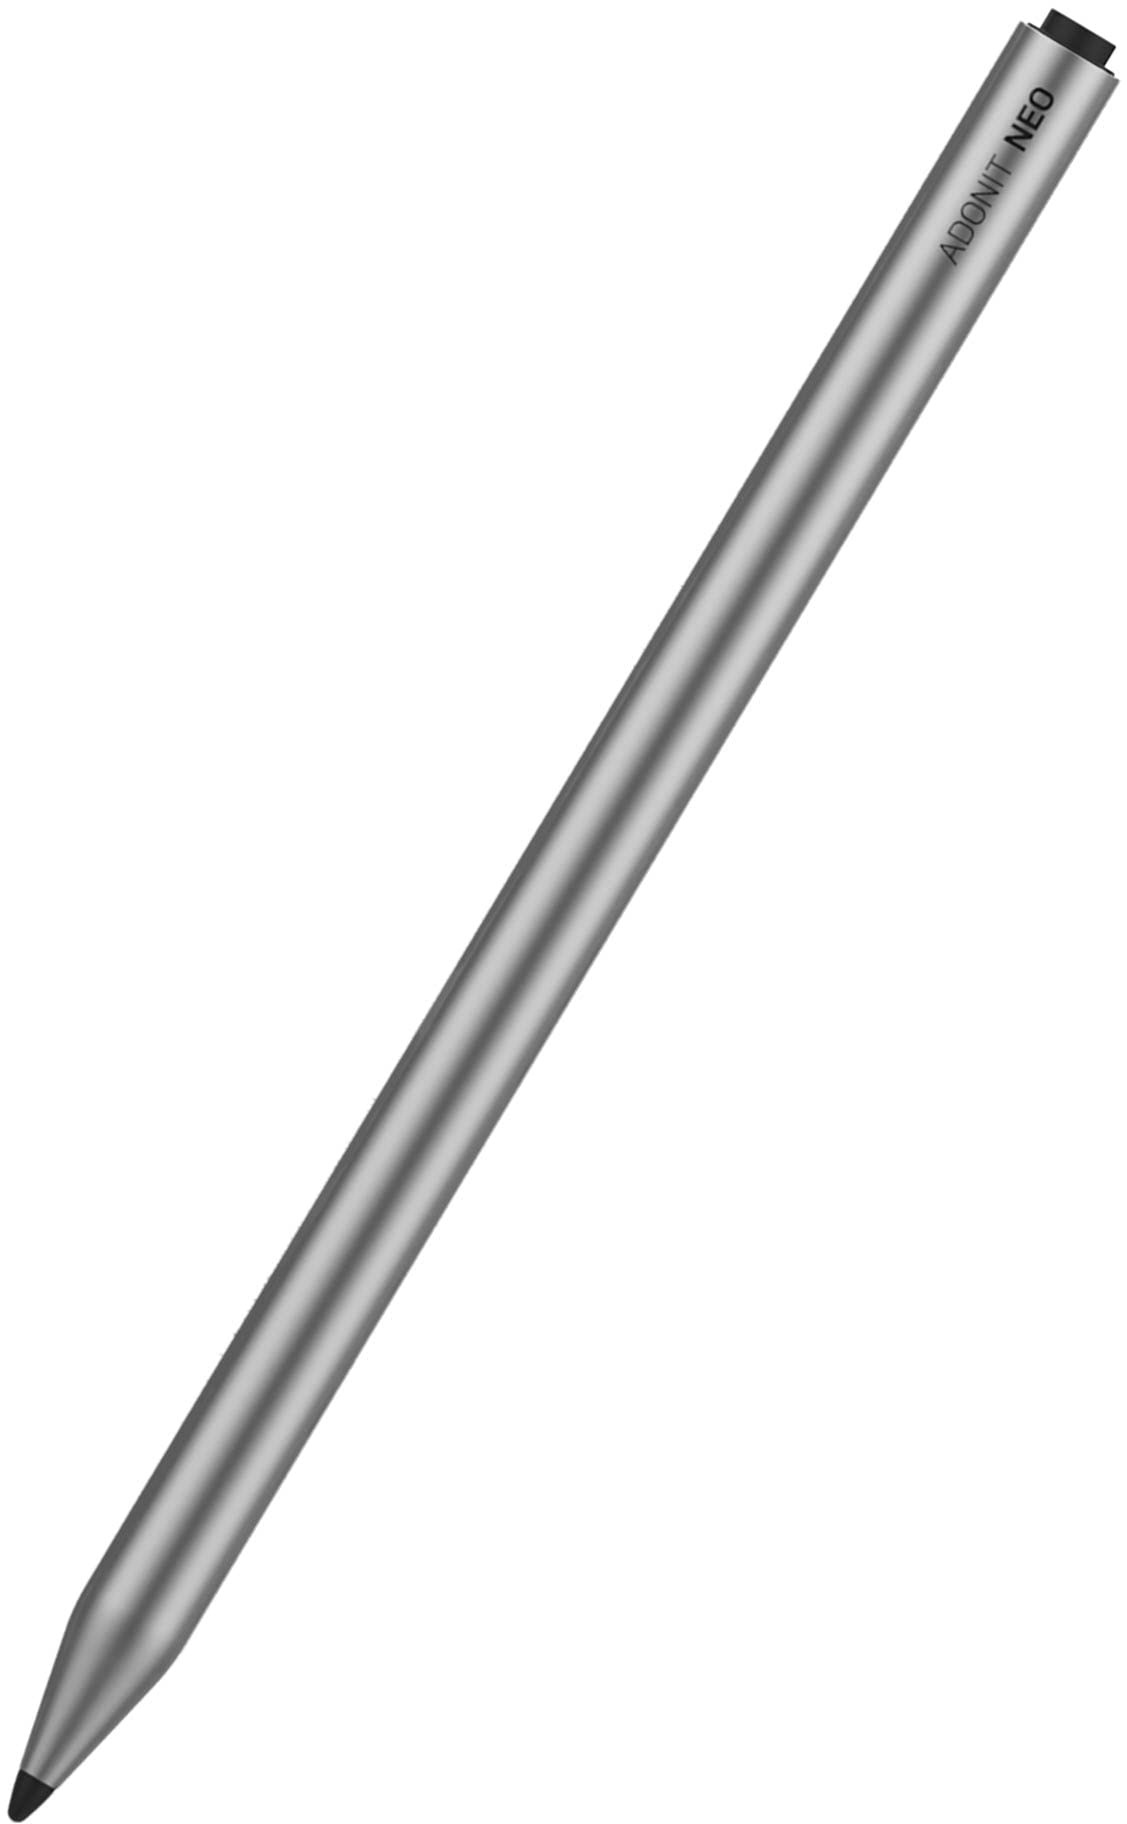 Adonit Neo Stylus Apple iPad Eingabestift mit magnetischer Befestigung [Extra Lange Akkulaufzeit, iPad Mini/iPad/iPad Air/iPad Pro Stift mit Palm Rejection, Dünne Spitze] Graphit schwarz